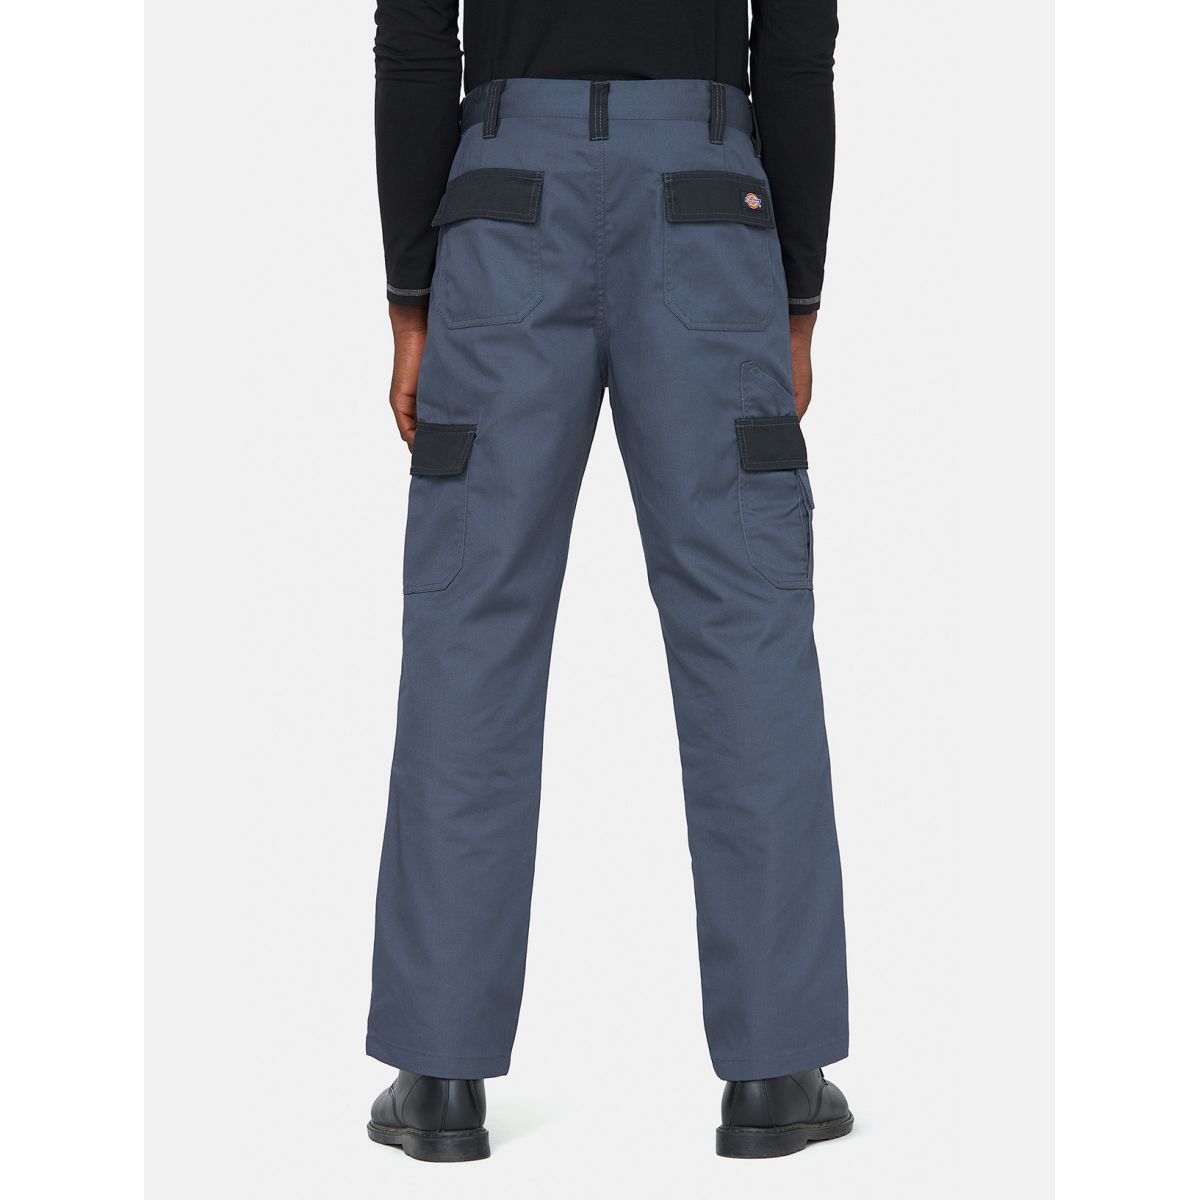 Pantalon Everyday Gris et noir- Dickies - Taille 40 1